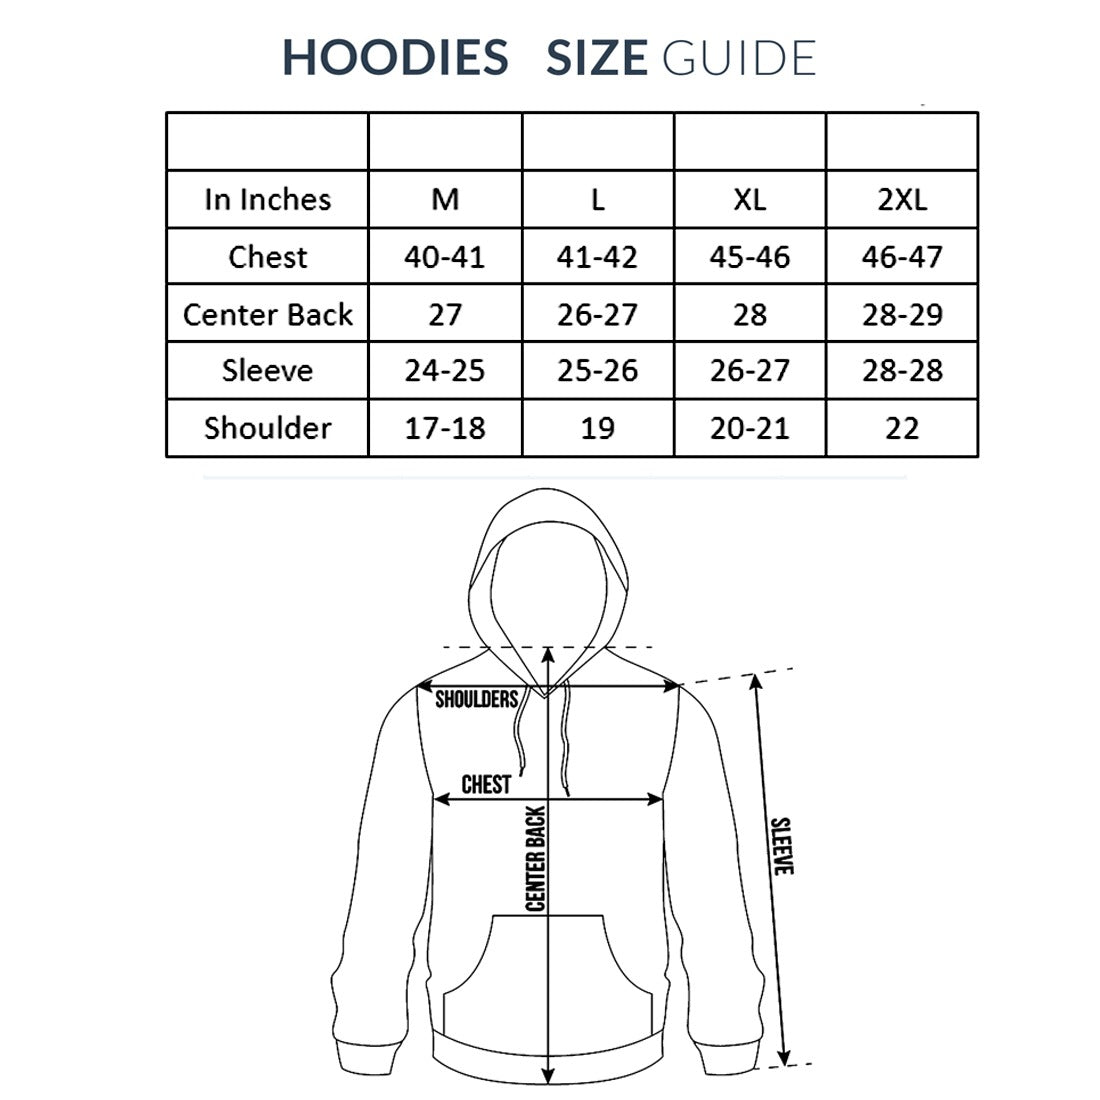 Nutcase Unisex Designer Black Hoodie Men Sweatshirt (Black) - Cross